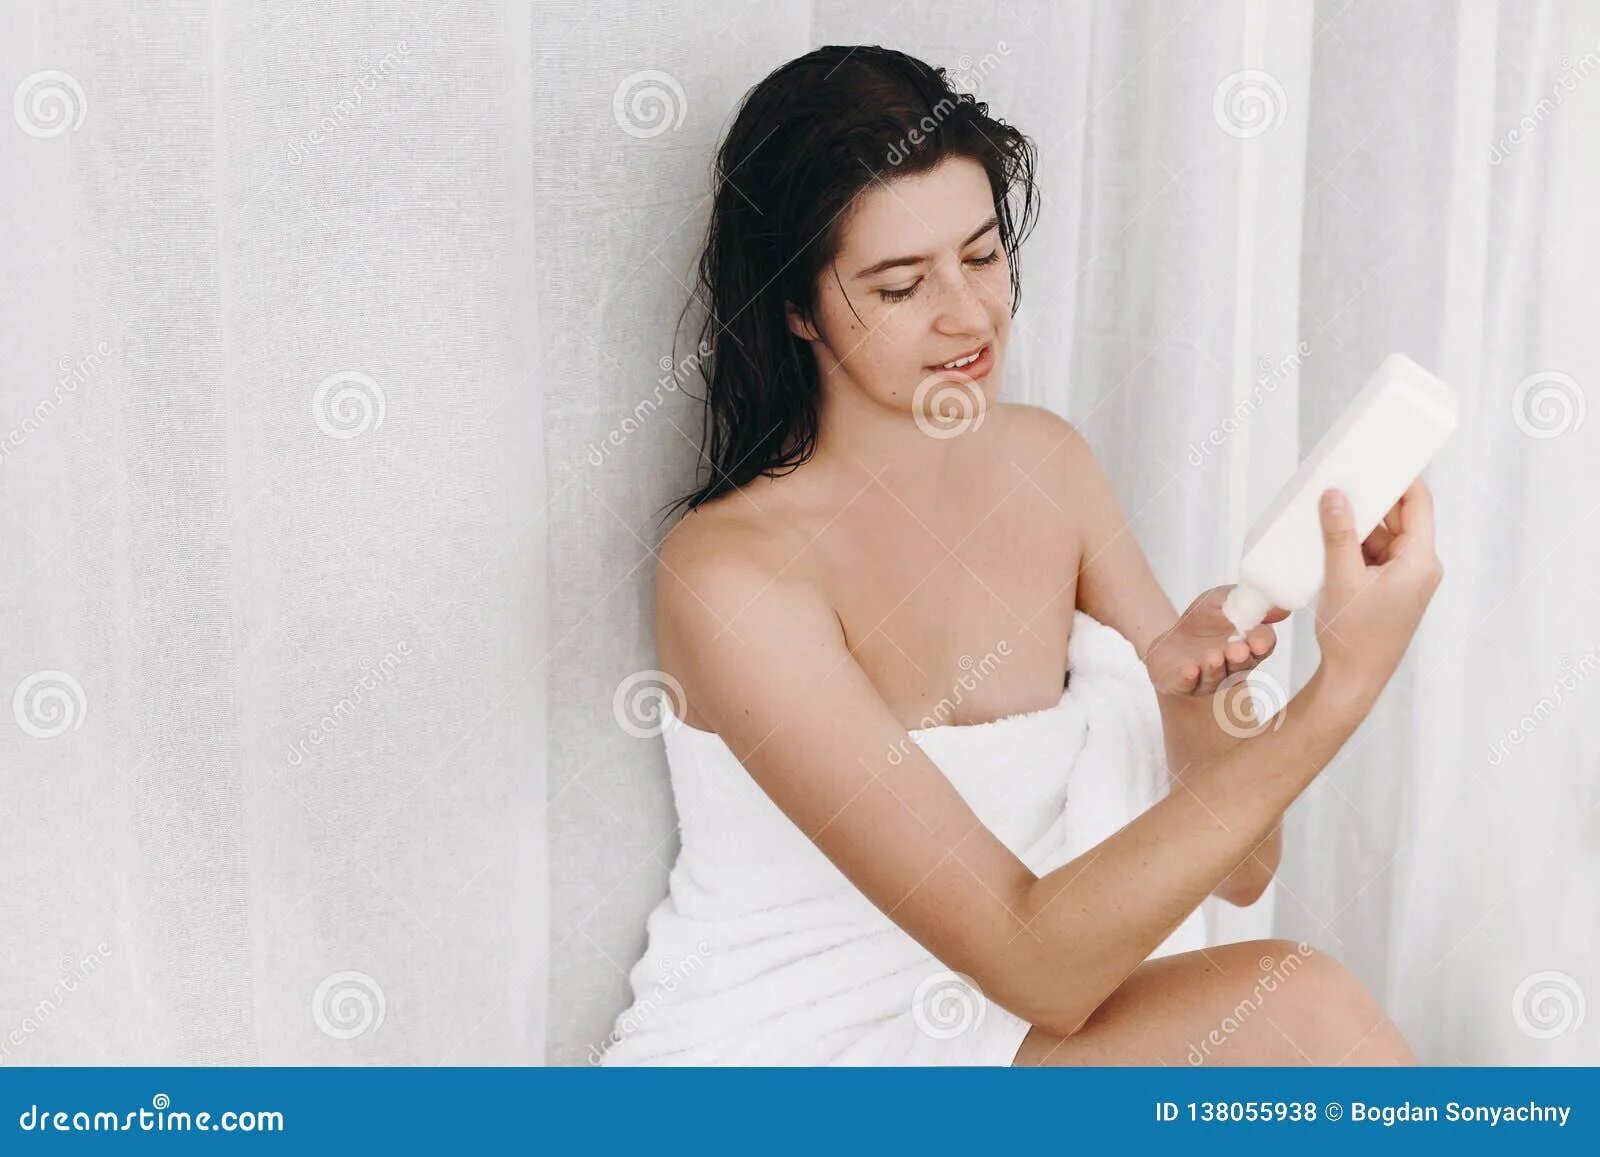 Полотенце на плечах. Девушка с полотенцем у лица картинка. Девушка в белом полотенце. Картинка ухода полотенцем. Приложил полотенце